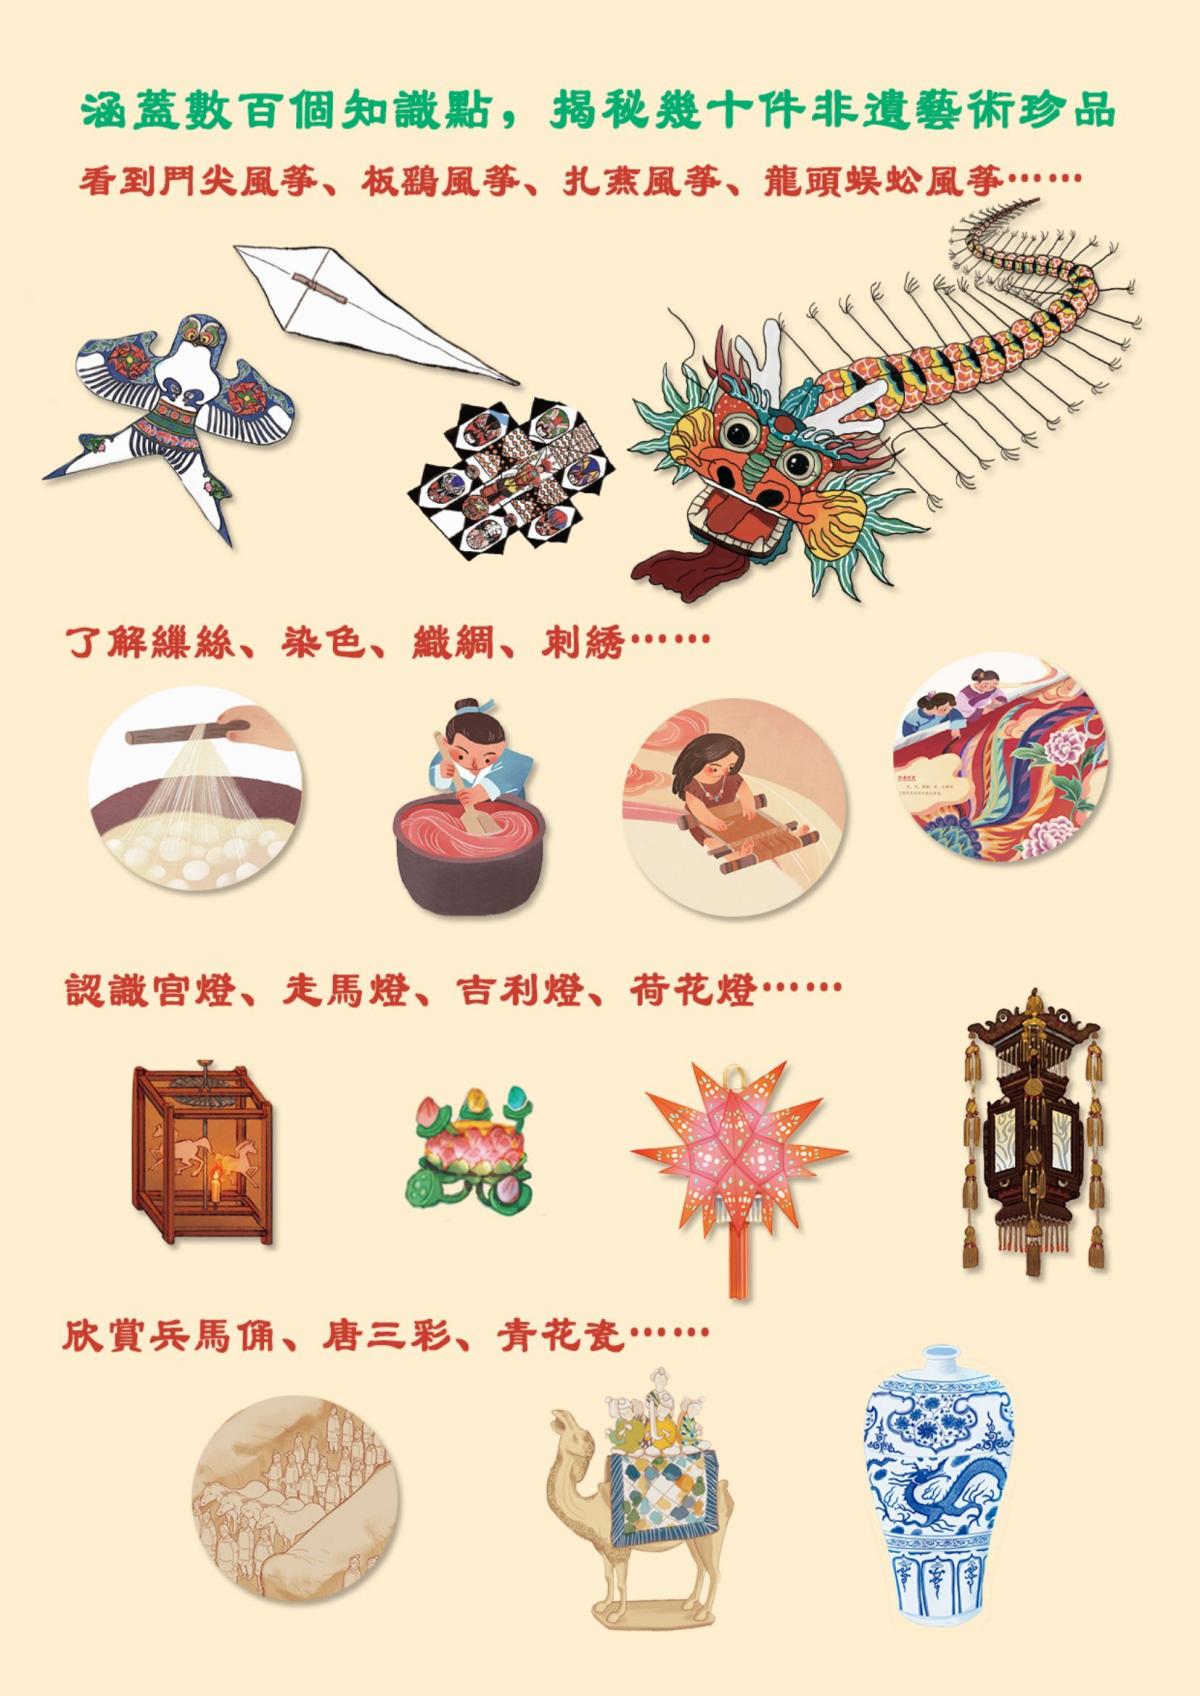 天大文控| 非遺中國《風箏、絲織、燈綵、陶瓷》(全4冊) | HKTVmall 